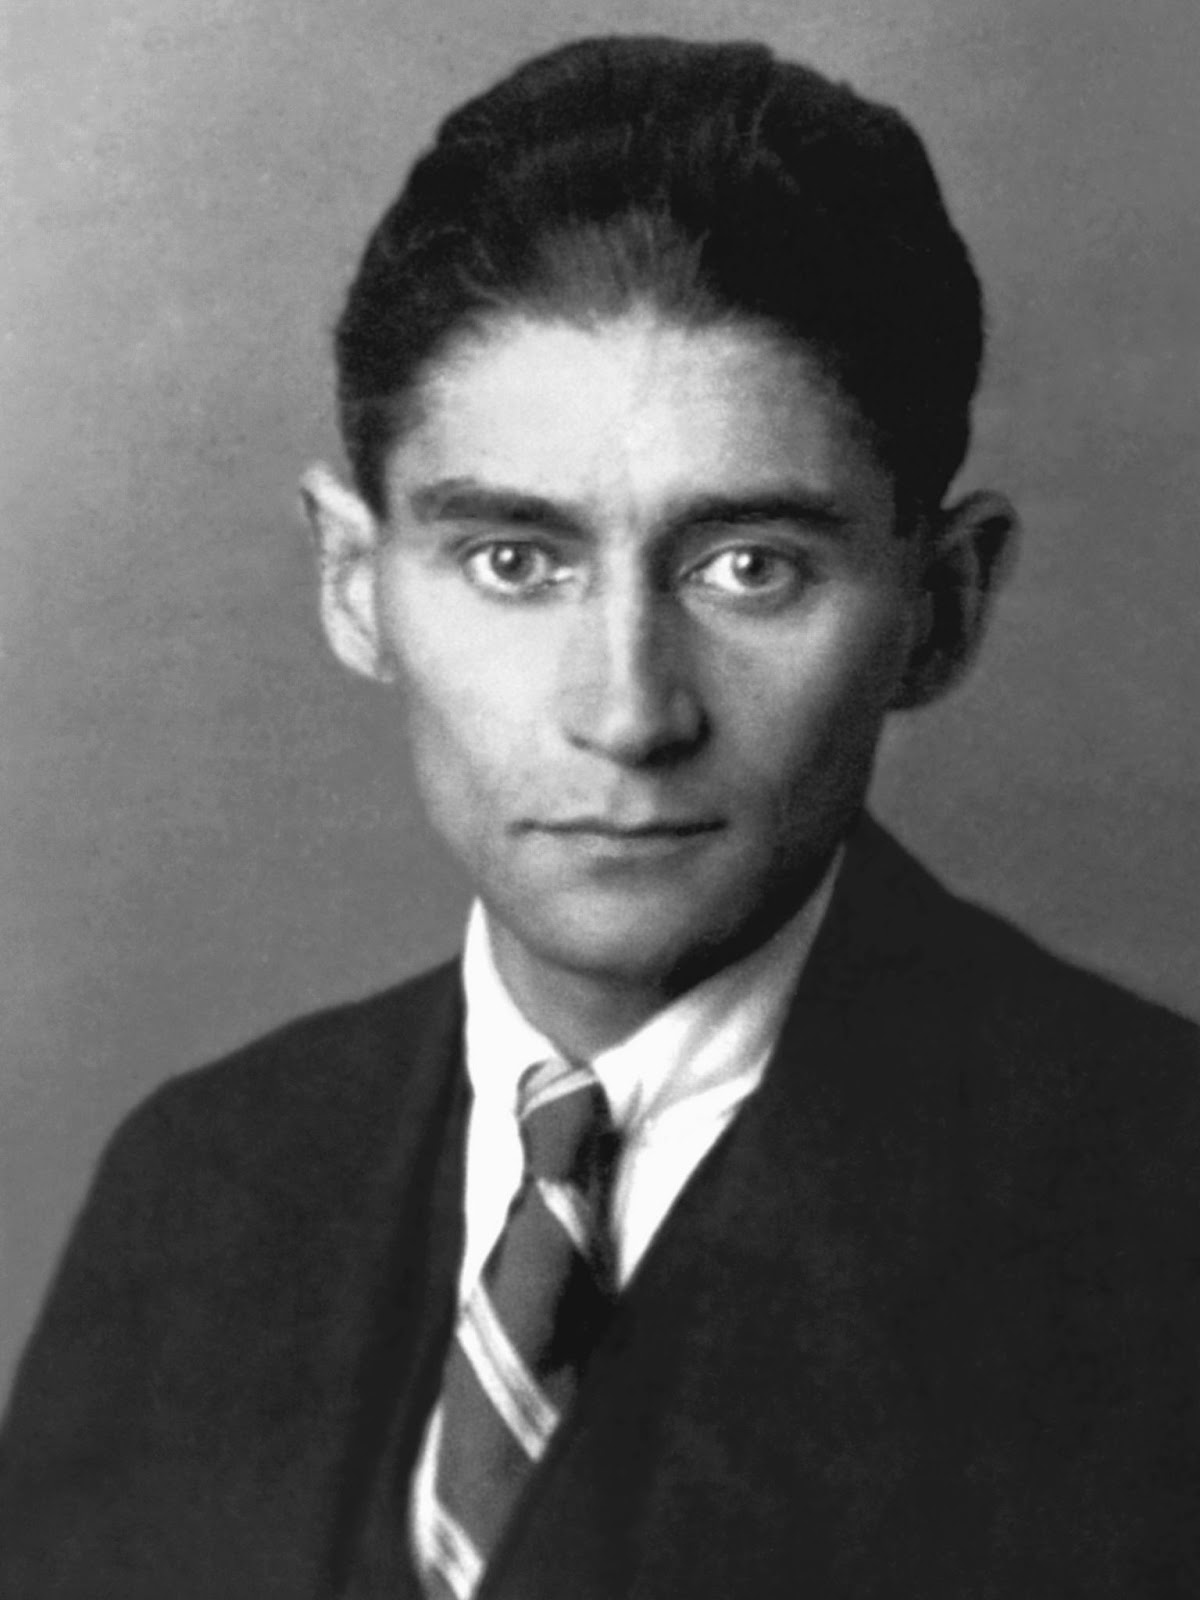 Schwarzweiss Portrt von Franz Kafka